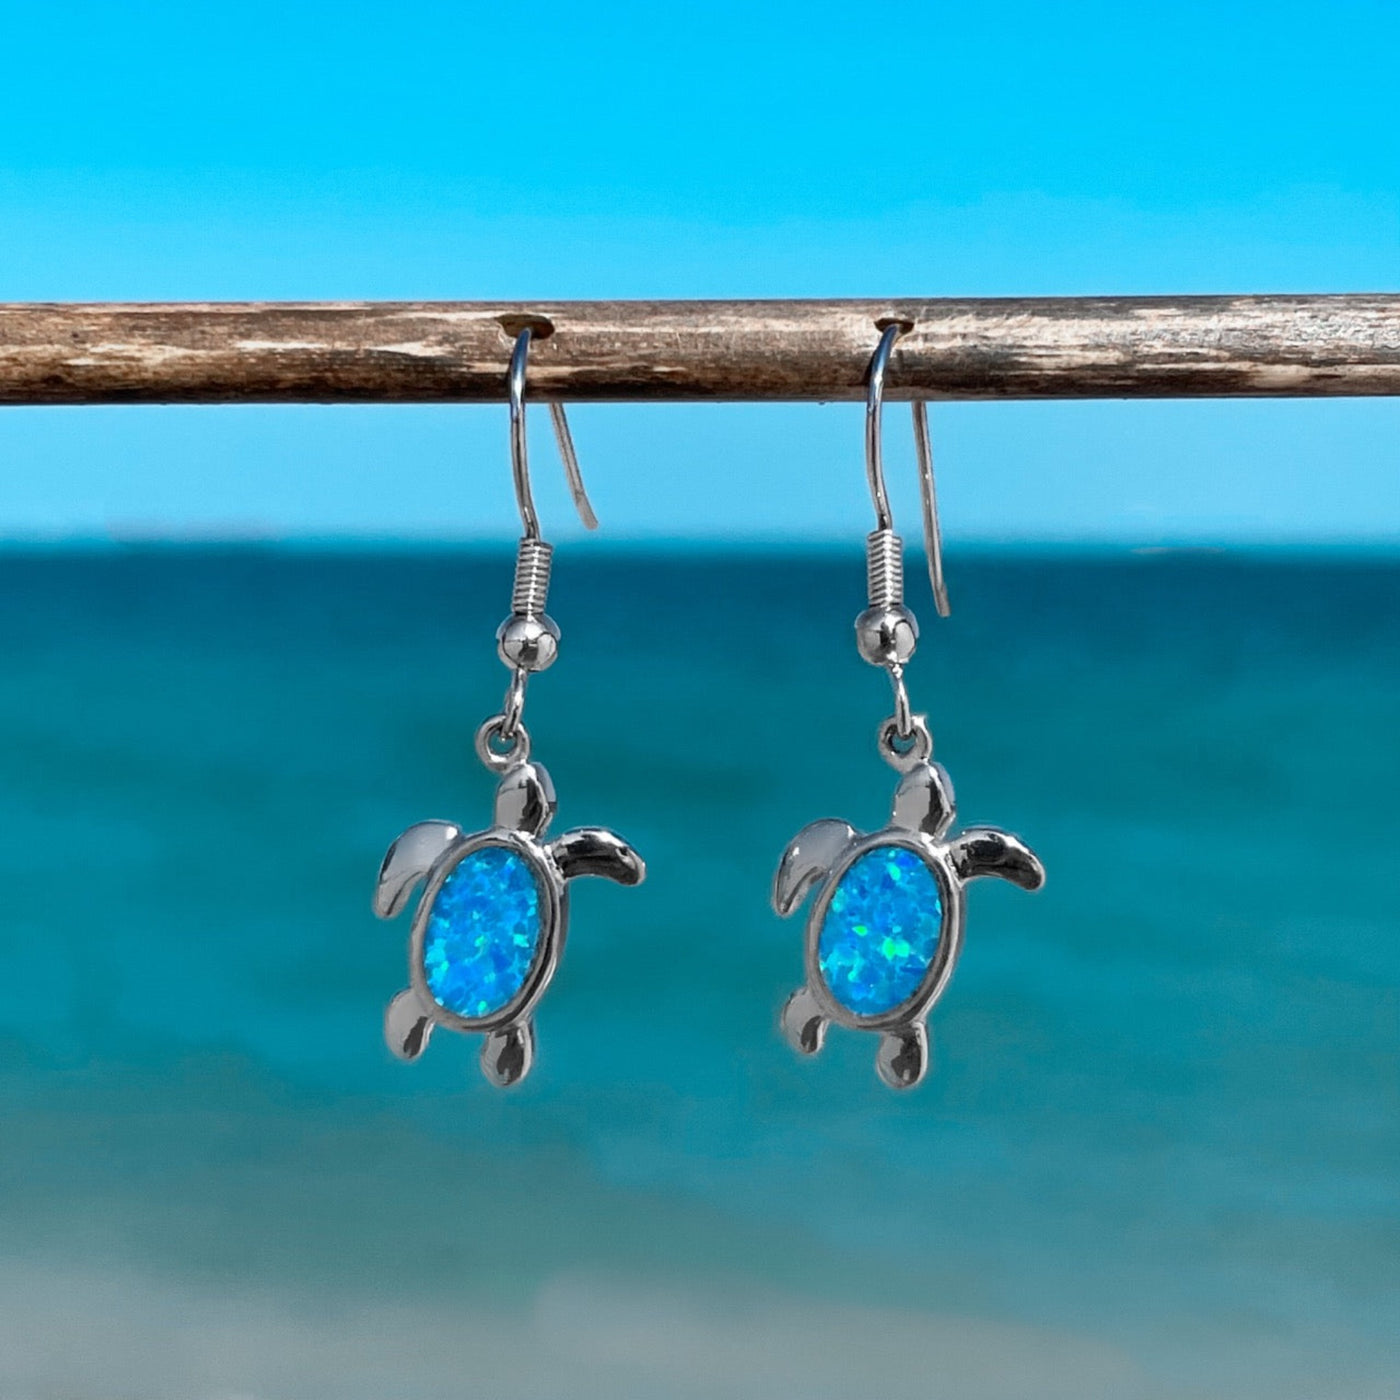 Cute Opal Sea Turtle Earrings